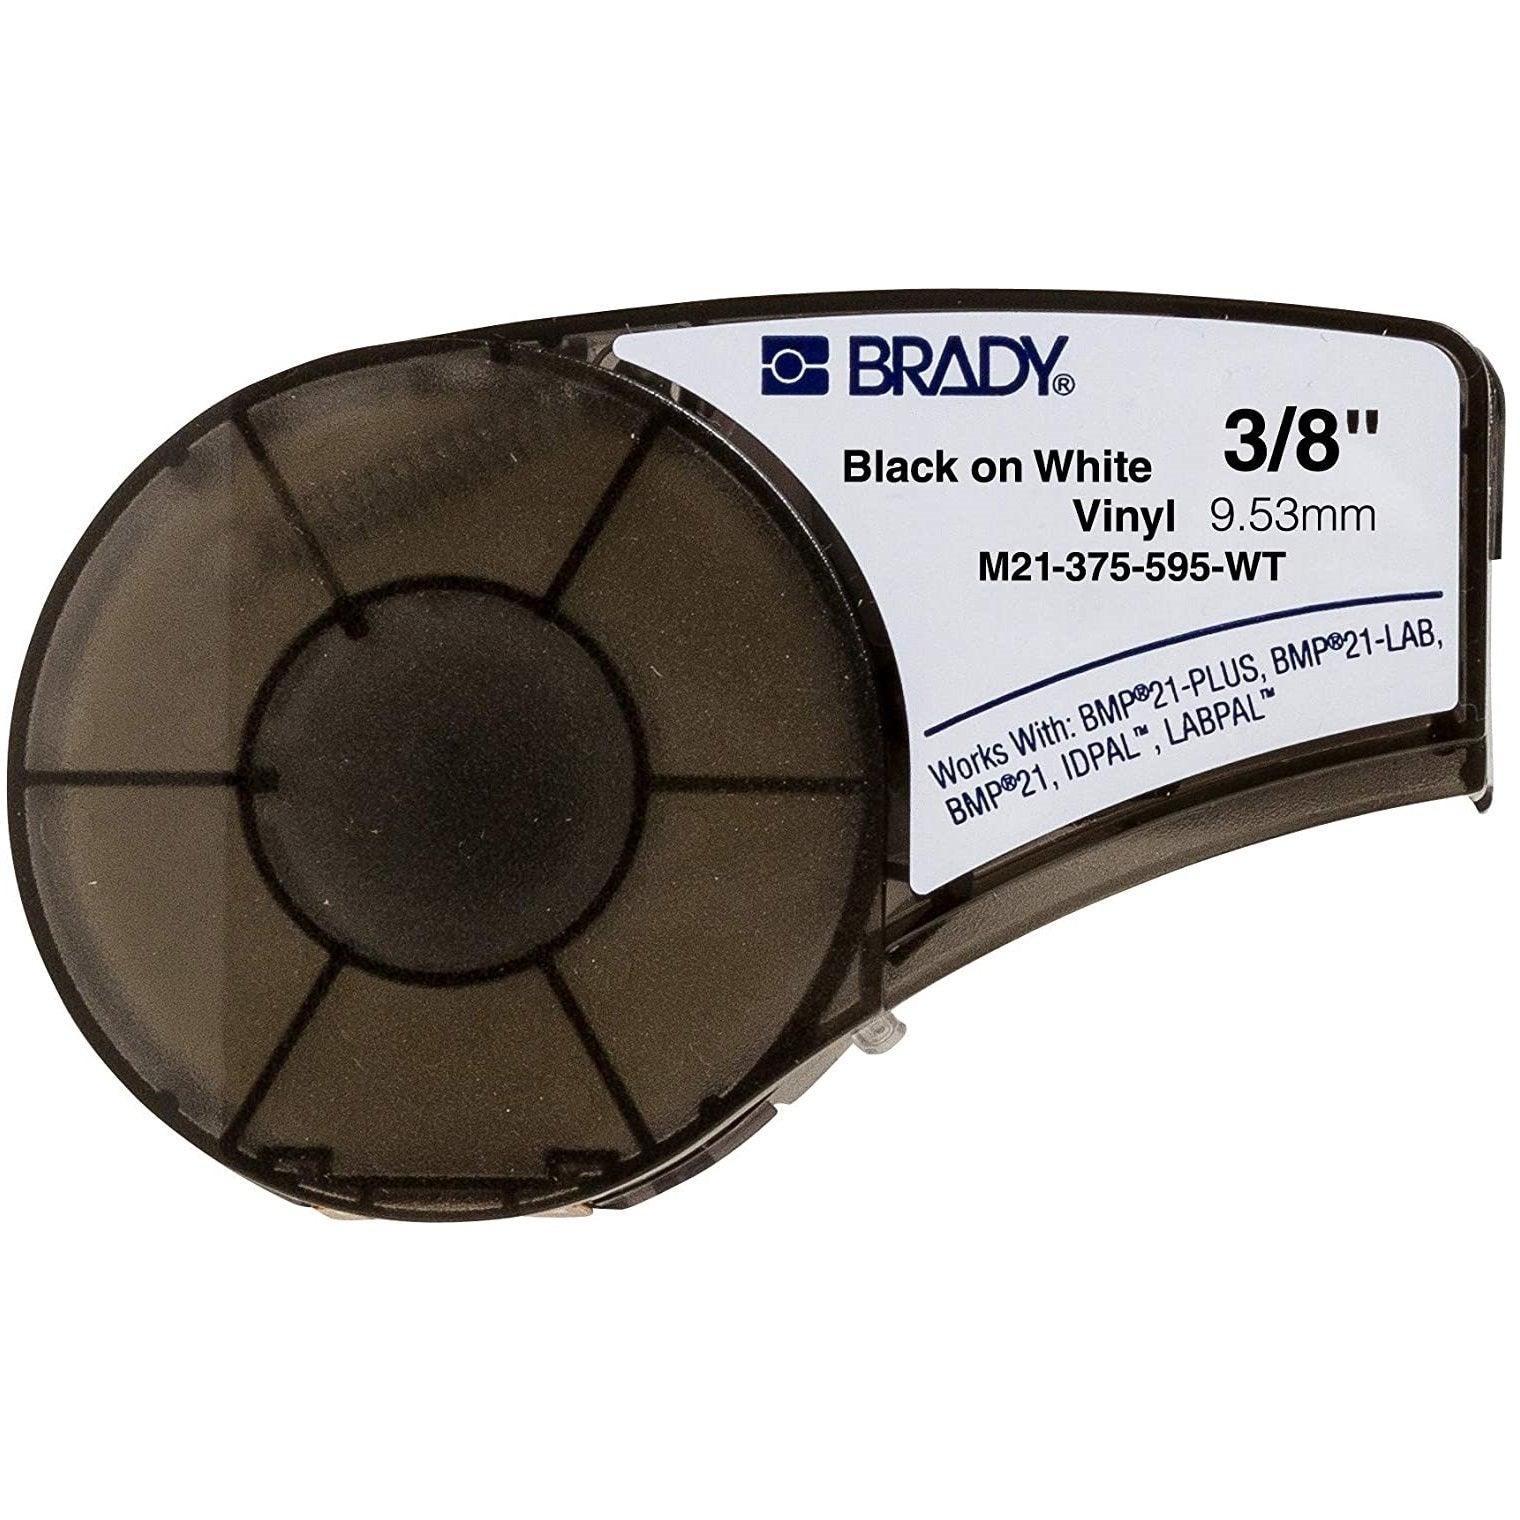 Étiquette recharge pour Brady M21-375-595-WT